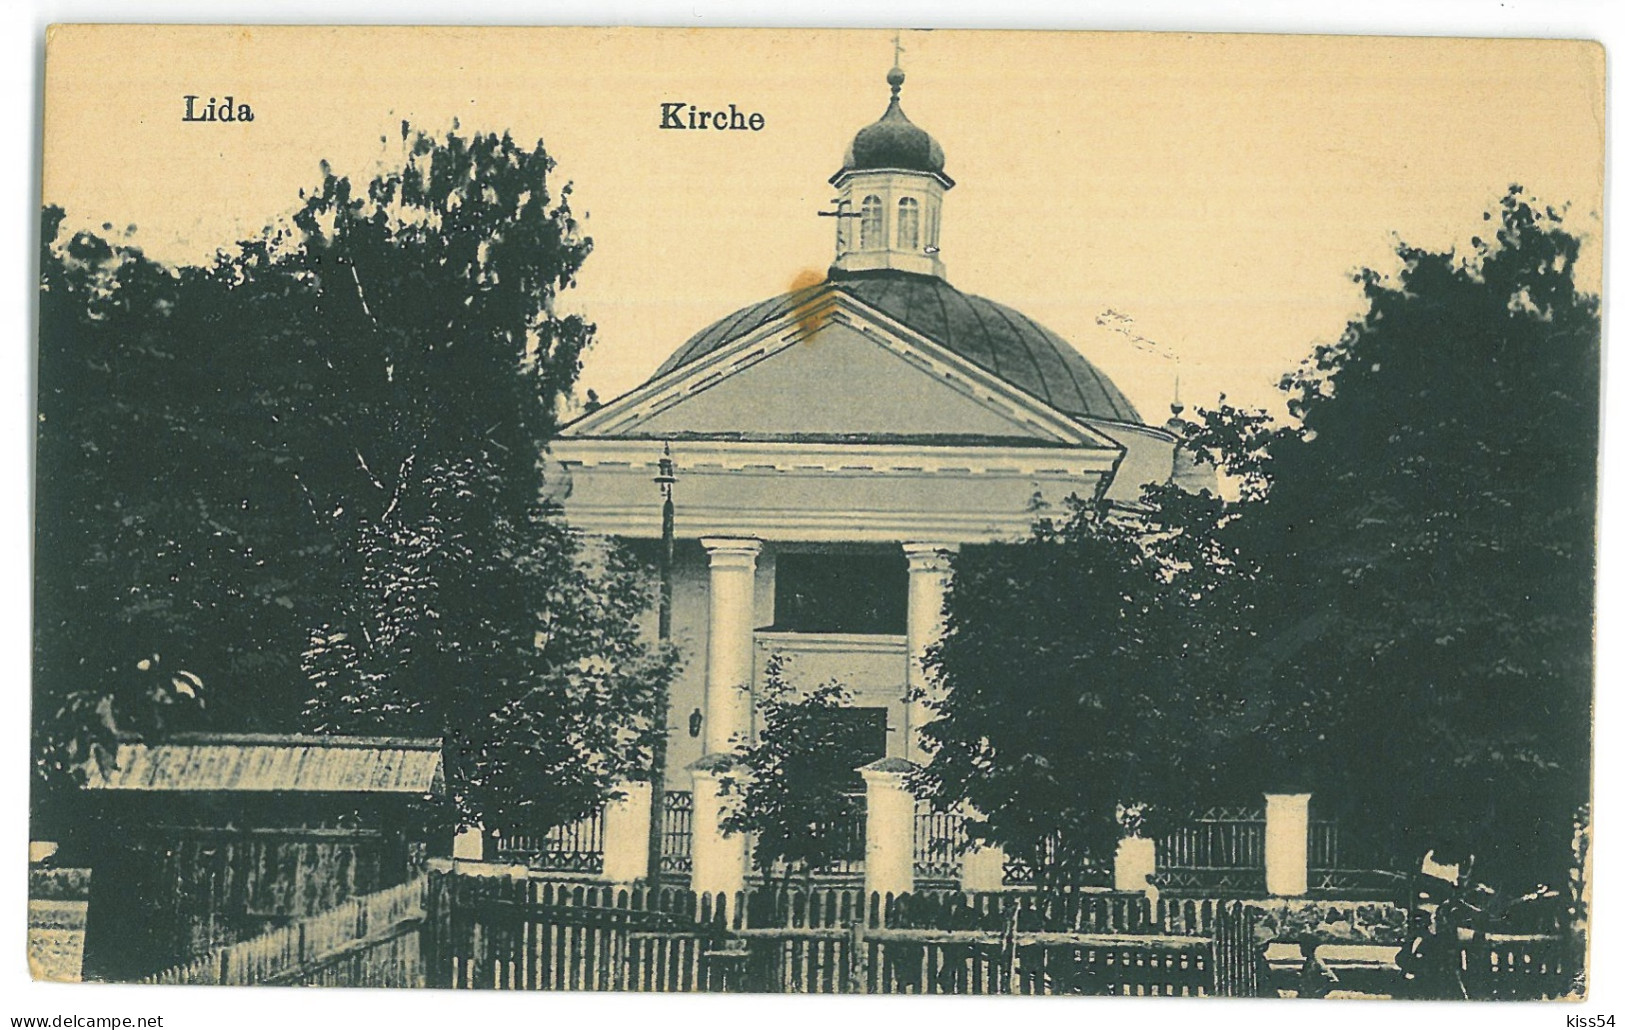 BL 23 - 21499 LIDA, Church, Belarus - Old Postcard, CENSOR - Used - 1916 - Belarus